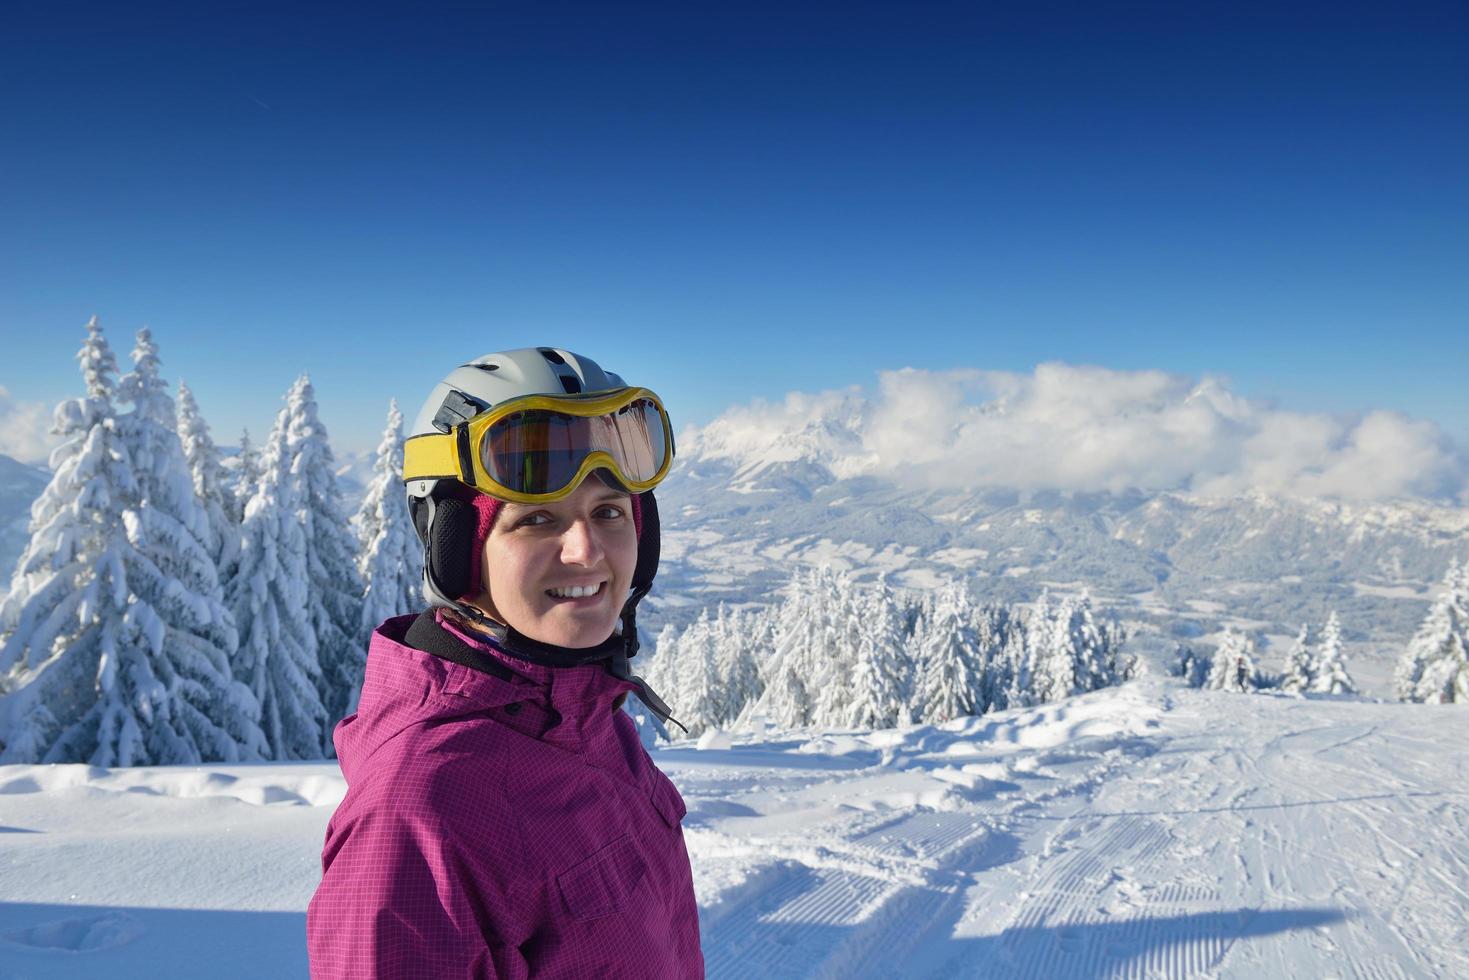 diversão de inverno e esqui foto